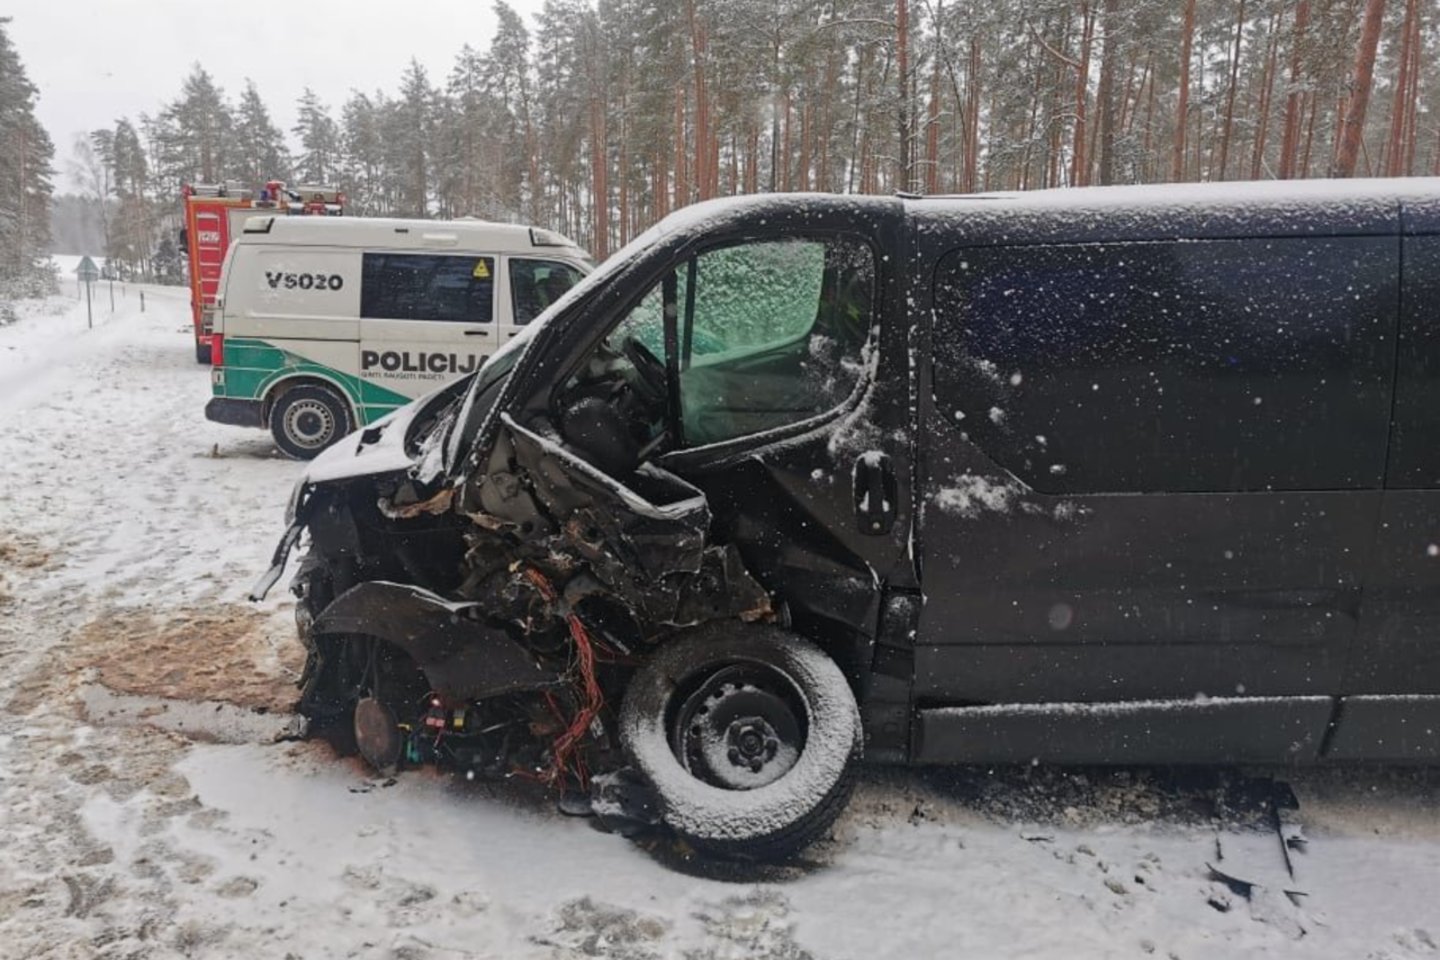  Švenčionių rajone per masinę avariją buvo sužeisti 4 žmonės, vienas prispaustas suniokotame automobilyje. <br> T.Bauro nuotr. 